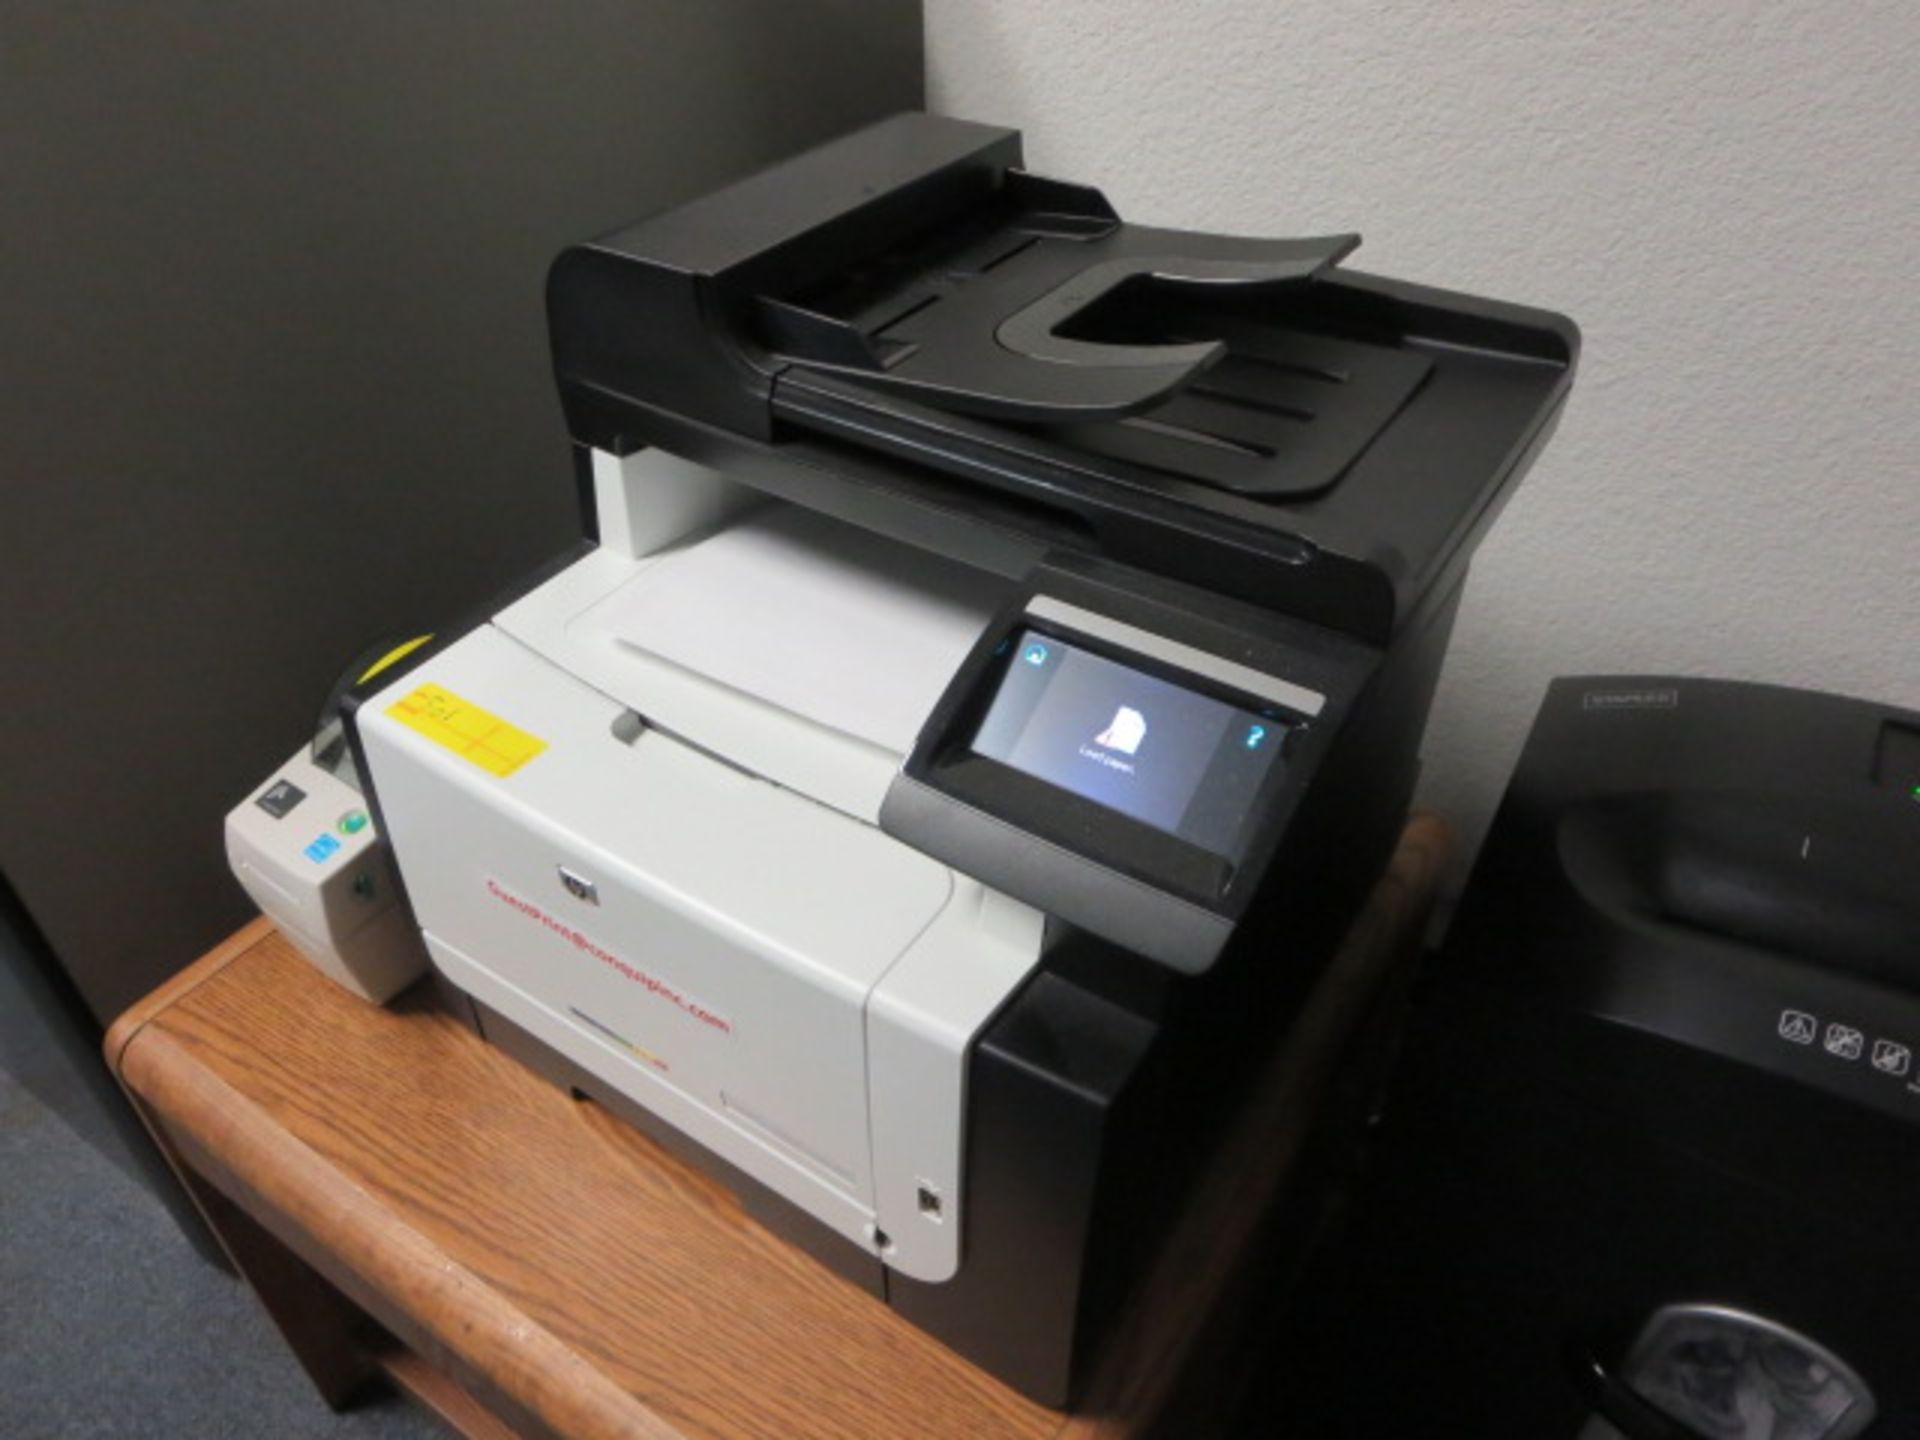 HP Laserjet Pro All-In-One Color Printer, model CM1415tnw